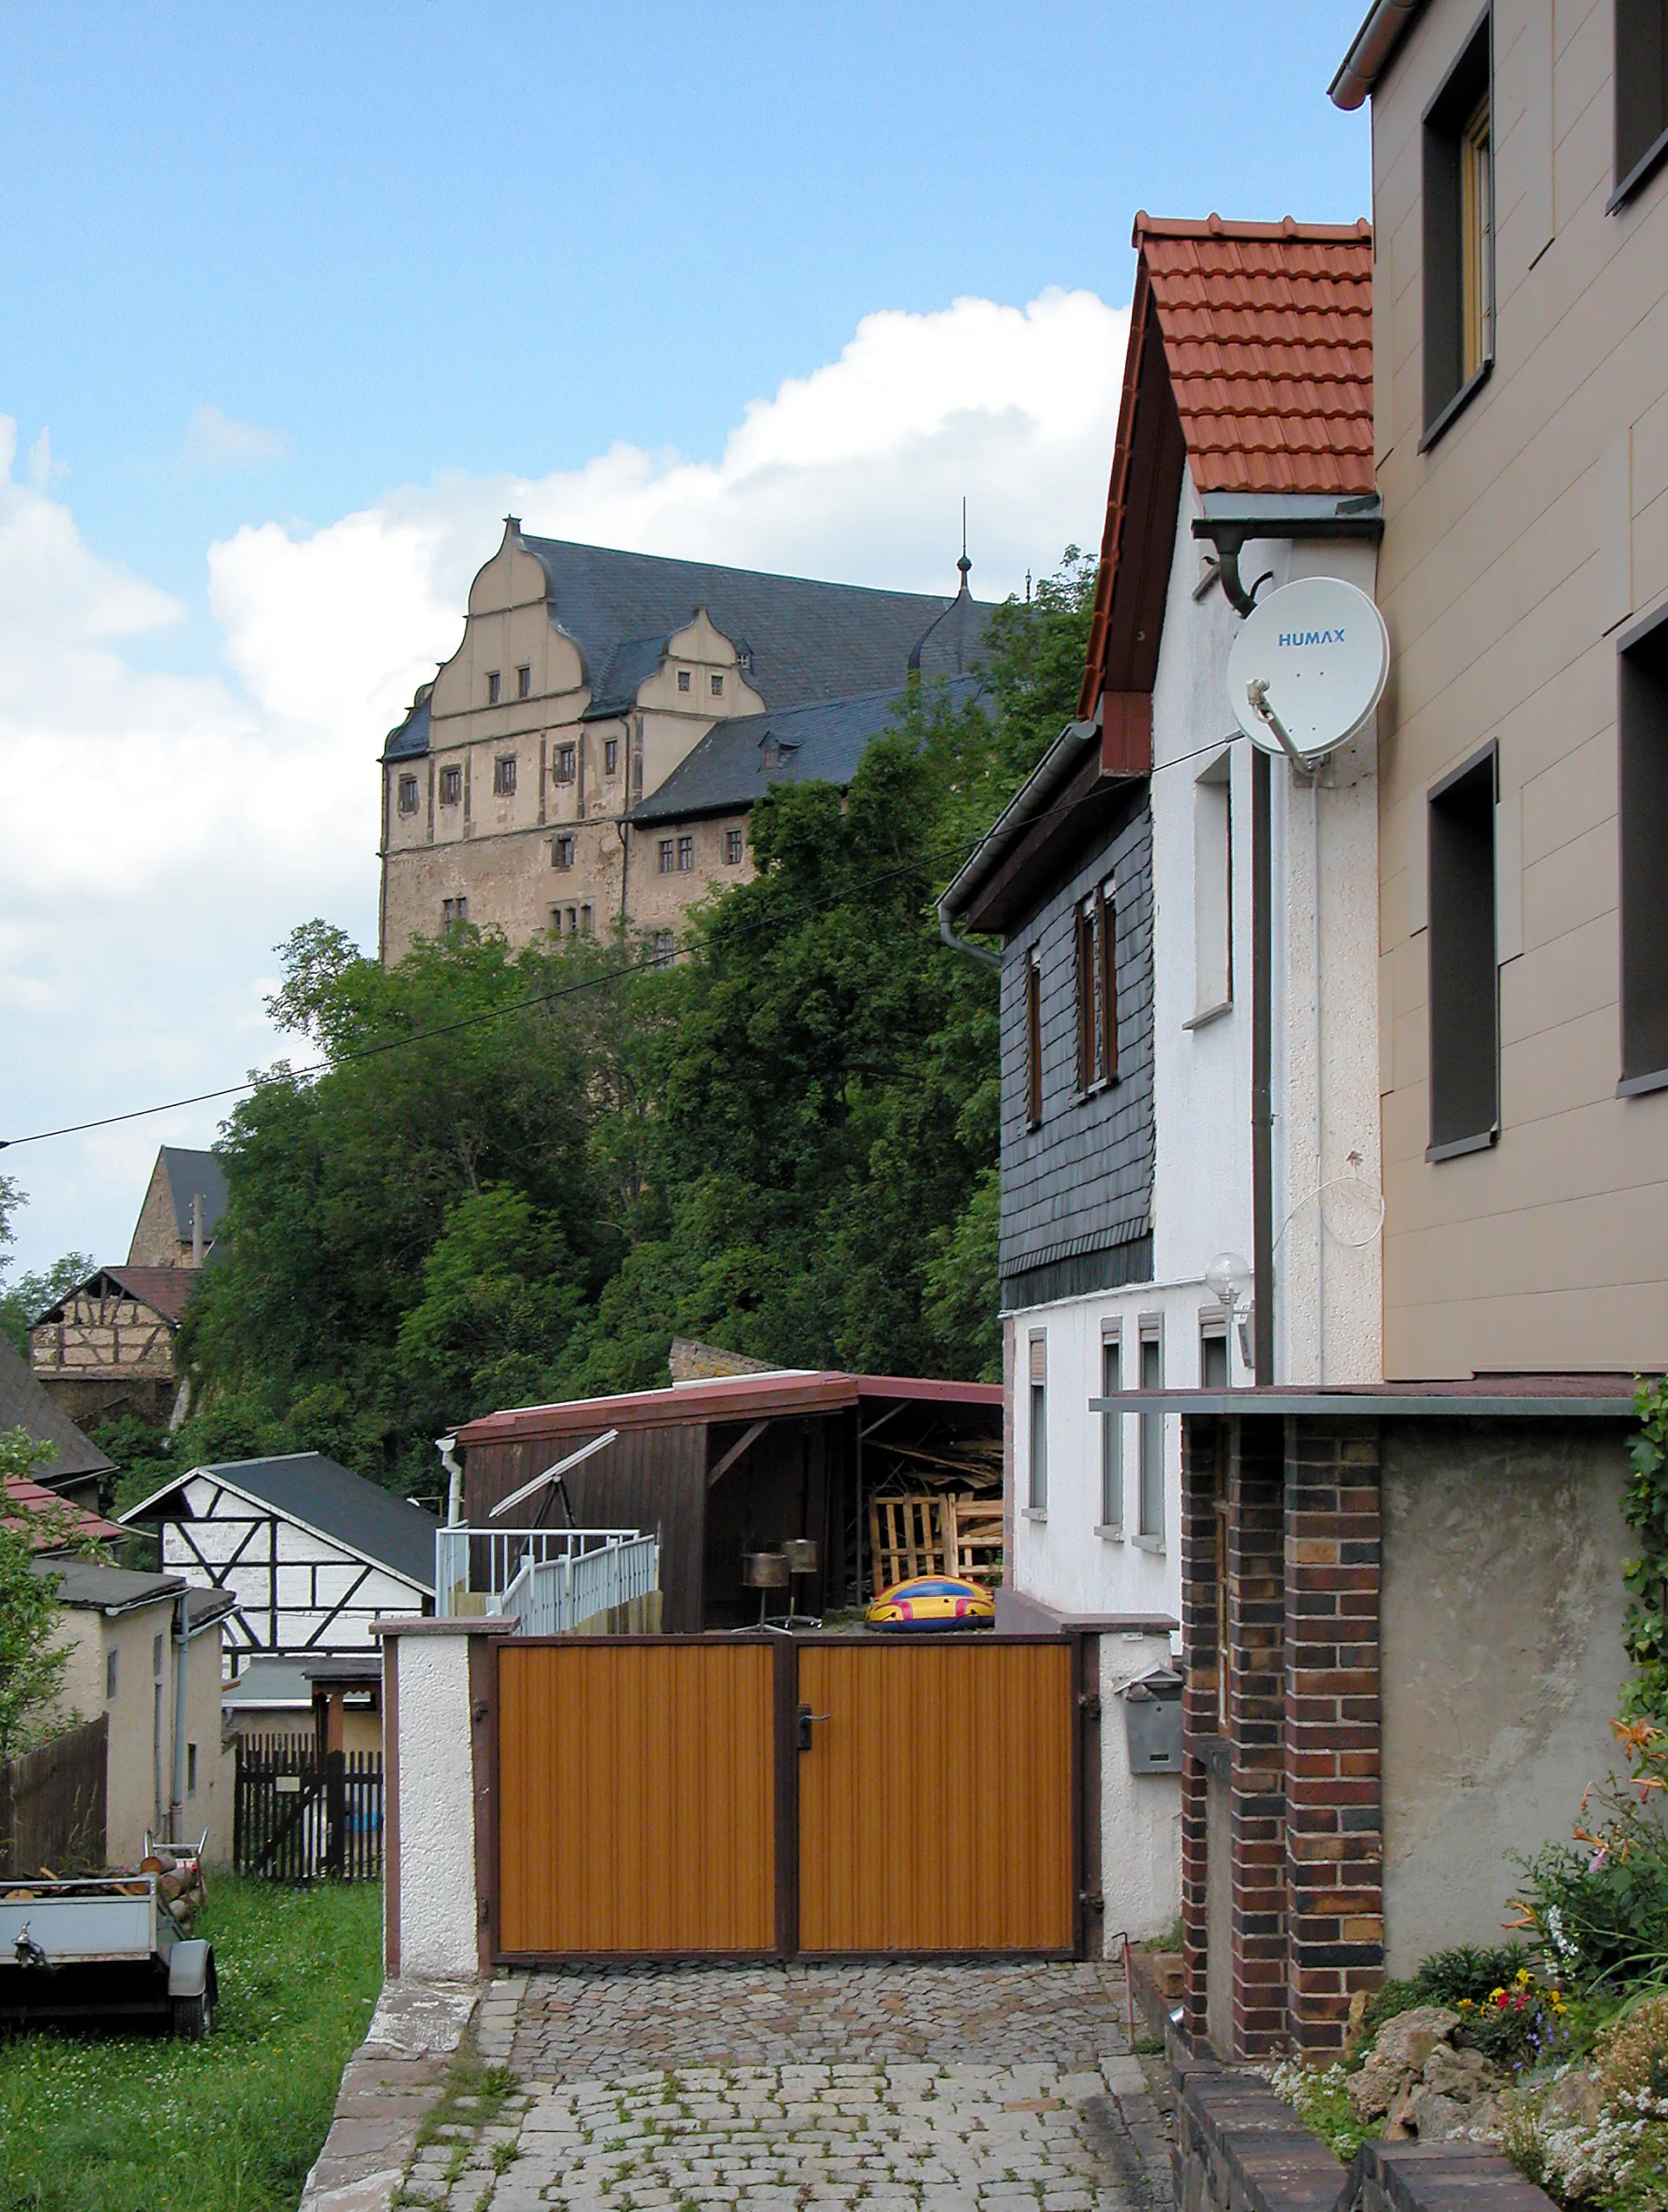 Photo showing: 04.07.2012    07333  Könitz (Unterwellenborn), Schloßberg 16: Schloß (GMP: 50.651241,11.489464). Um 800 begann der Bau der Burganlage durch einen Ritter von Conz. Von seinem Namen leitet sich auch der Name des Adelsgeschlechts Könitz ab. Die  Burg ist eine 1438 urkundlich genannte, unregelmäßige Anlage. 1562 wird der Bau des Schlosses in seiner noch heute zu sehenden Form vollendet. Im Westen und Süden je ein Flügel, im Osten mächtiger Bergfried, im Hof Treppenturm mit reichem spätgotischem Balkon, im Westflügel Remter mit Balkendecke. 1608 fällt das Schloss an die Grafen von Schwarzburg-Rudolstadt. In der DDR-Zeit dient das Schloß seit 1955 als Unterkunft für geistig behinderte Menschen / Feierabendheim. Es wird heute [... 2012] von der Arbeiterwohlfahrt Saalfeld-Rudolstadt geführt. Sicht von Südosten.  [DSCNn4221.TIF]20120704060DR.JPG(c)Blobelt